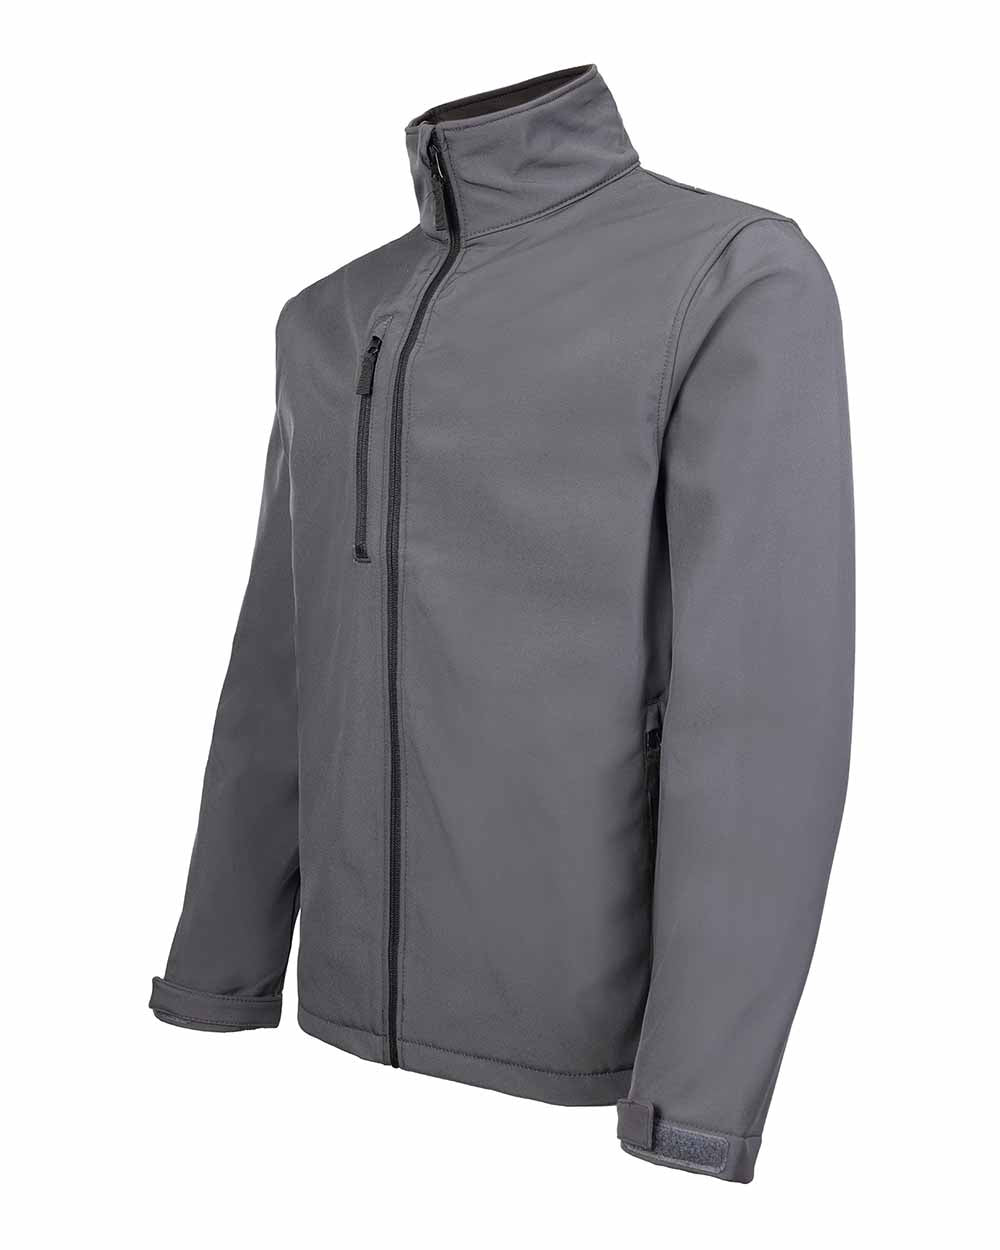 Zipped phone pocket detail Fort Selkirk Softshell Waterproof Jacket in Grey 